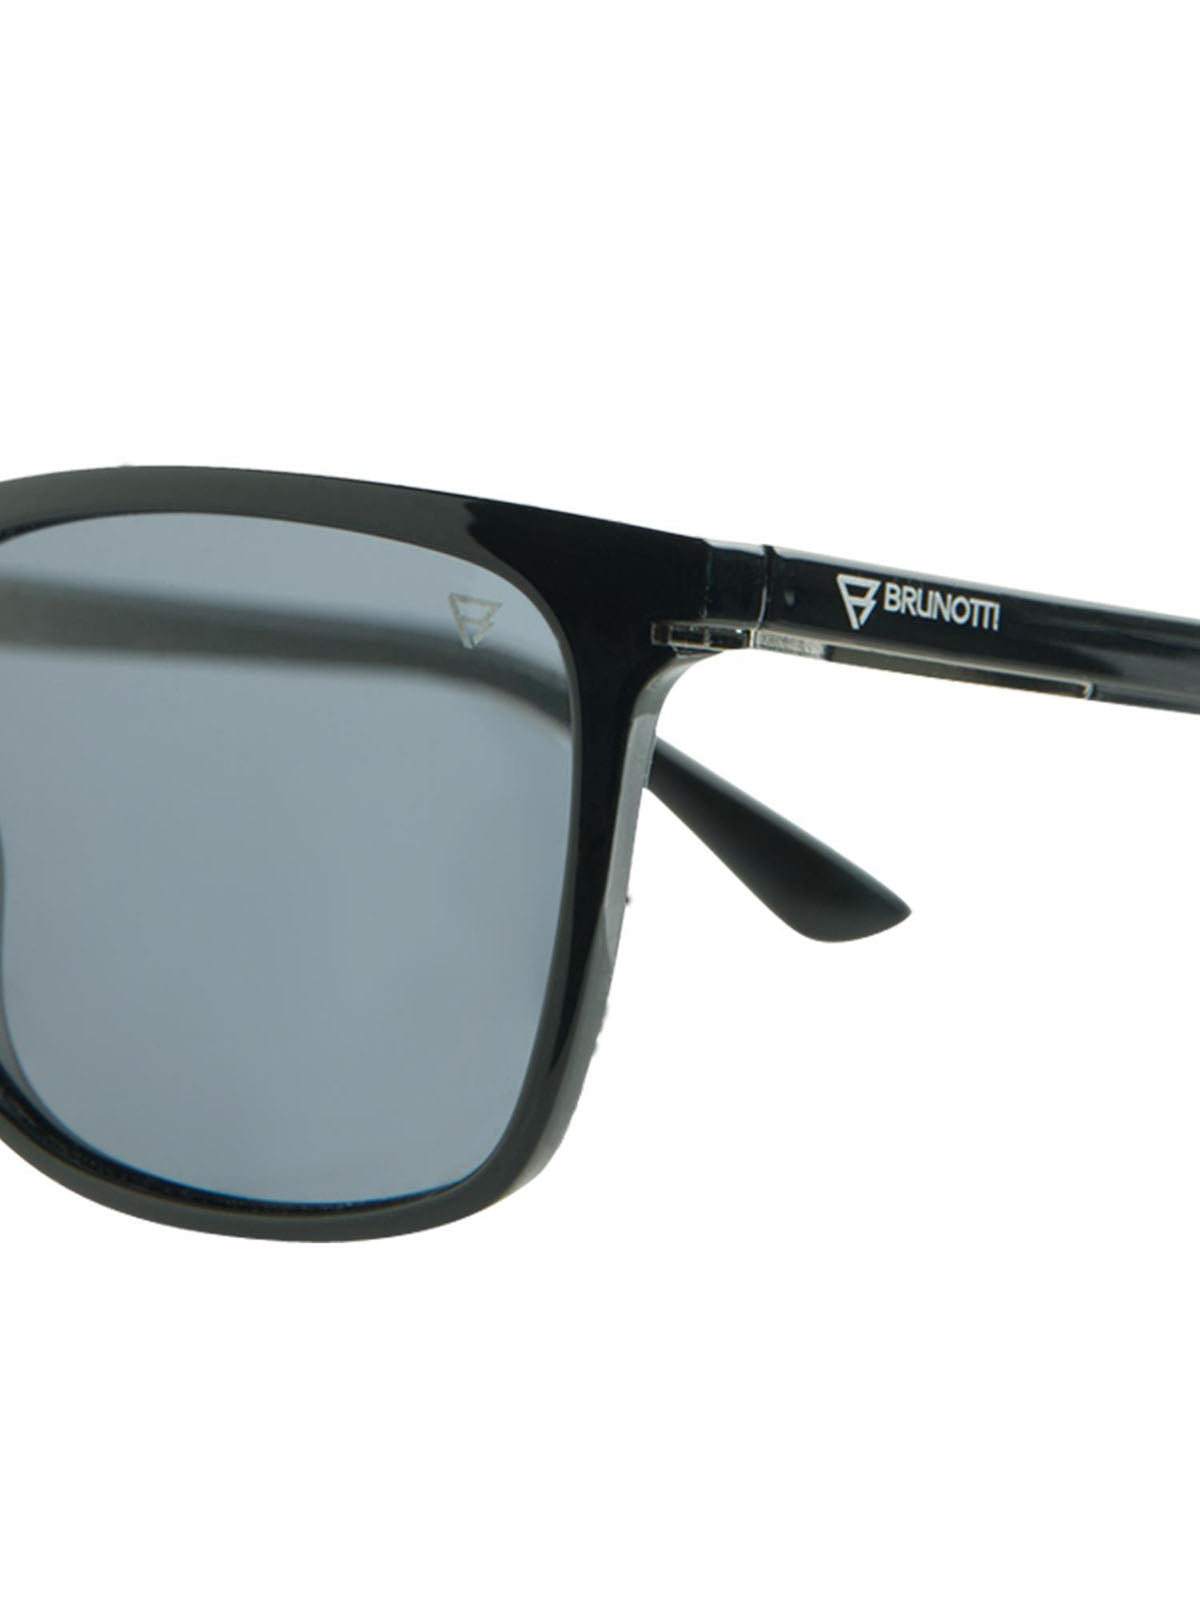 Onega-2 Unisex Sunglasses